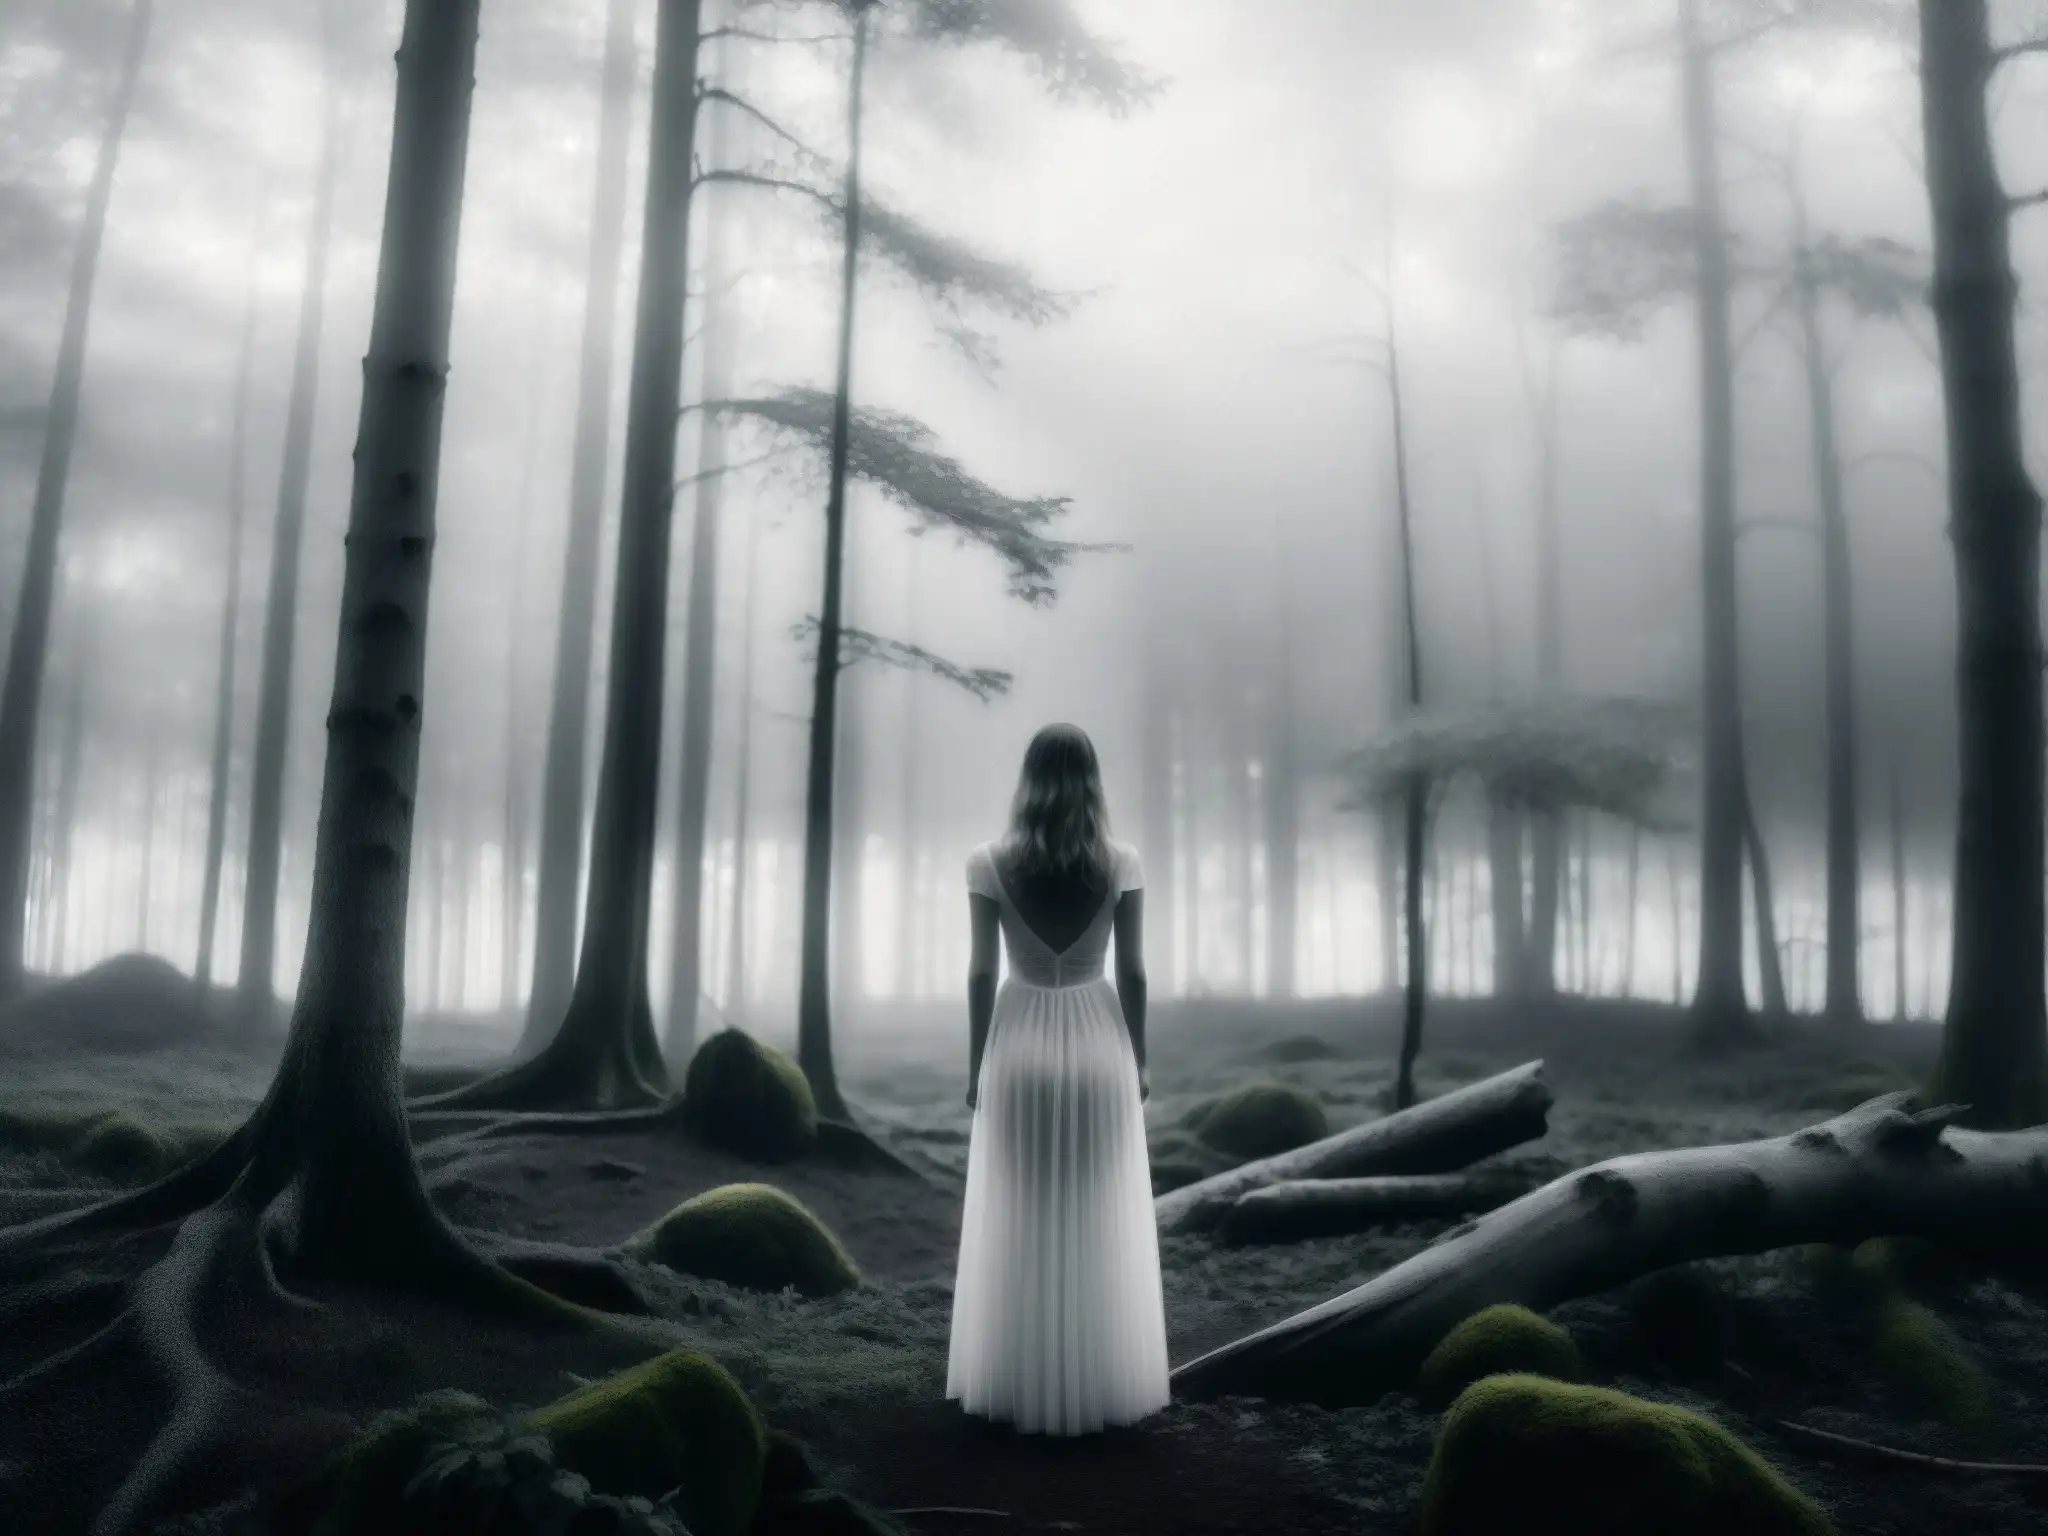 Una misteriosa aparición de mujer en un bosque blanco y neblinoso, evocando mitos y leyendas